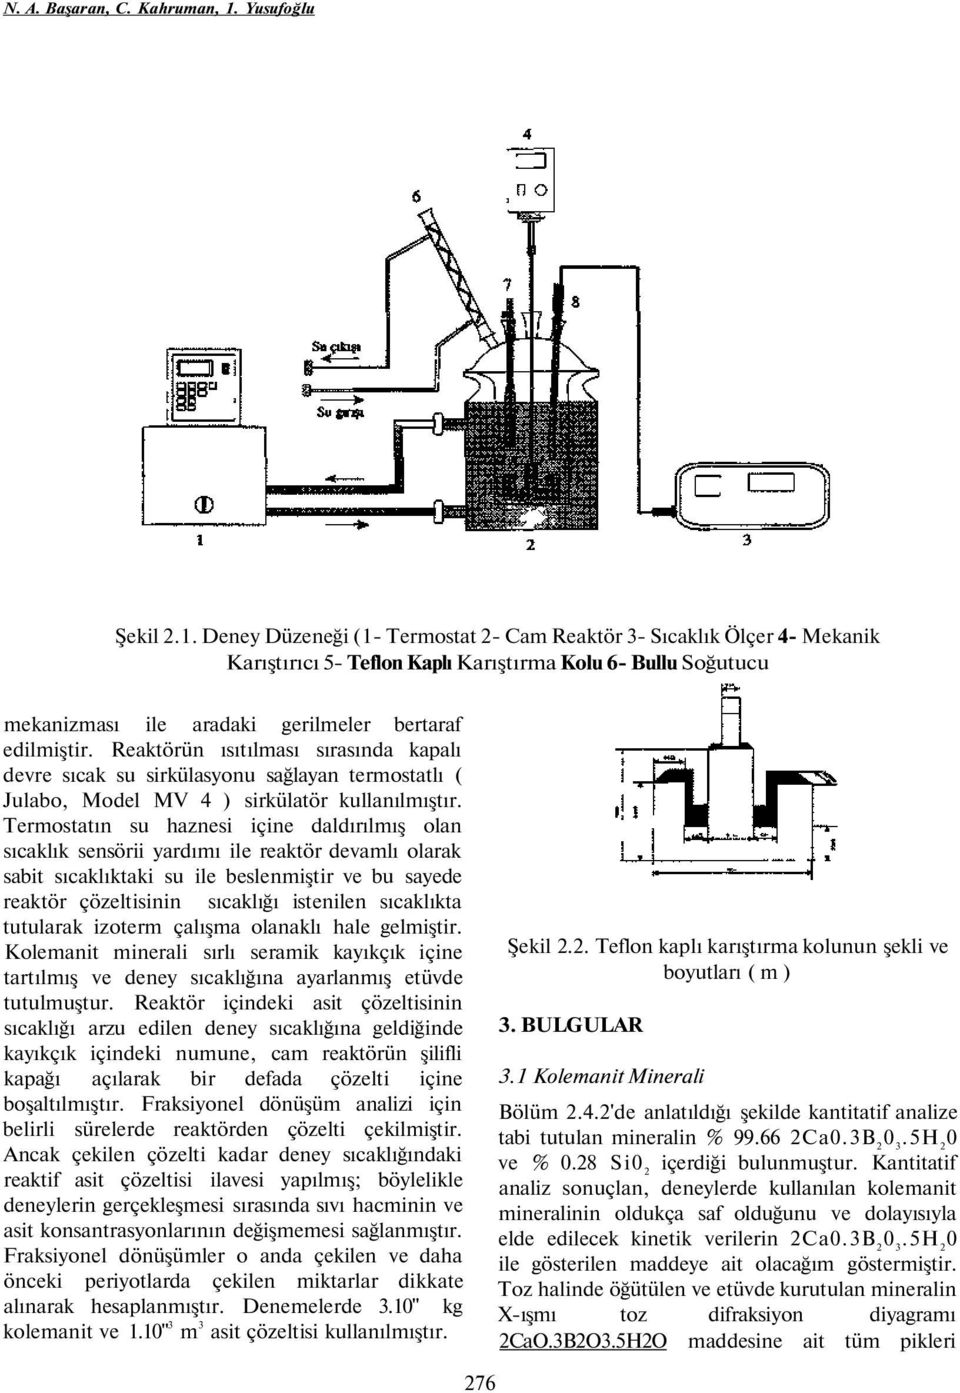 Deney Düzeneği (1- Termostat 2- Cam Reaktör 3- Sıcaklık Ölçer 4- Mekanik Karıştırıcı 5- Teflon Kaplı Karıştırma Kolu 6- Bullu Soğutucu mekanizması ile aradaki gerilmeler bertaraf edilmiştir.